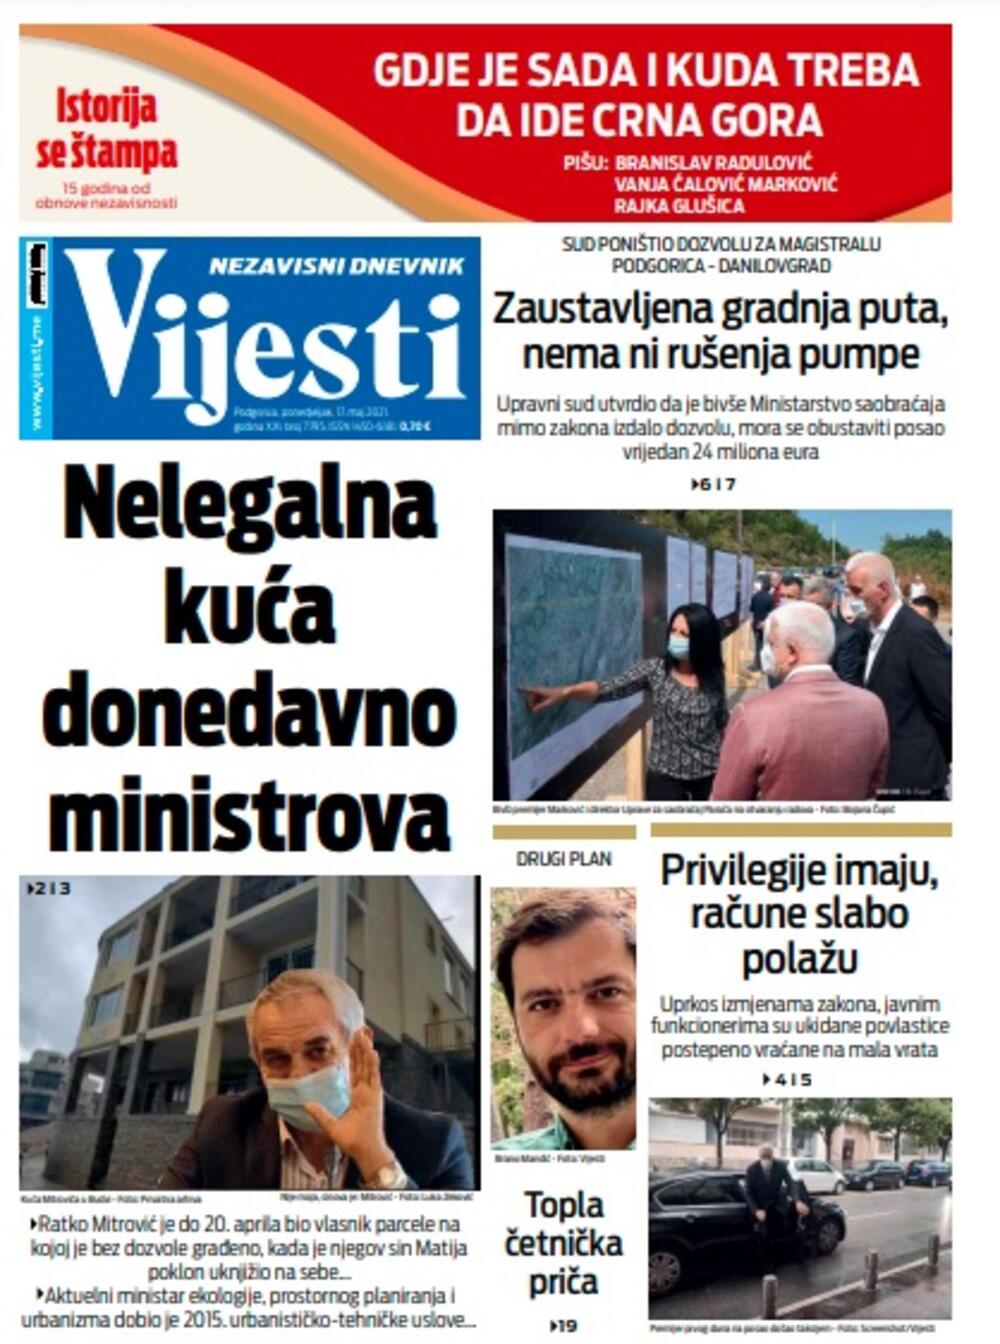 Naslovna strana "Vijesti" za ponedjeljak 17. maj 2021. godine, Foto: Vijesti